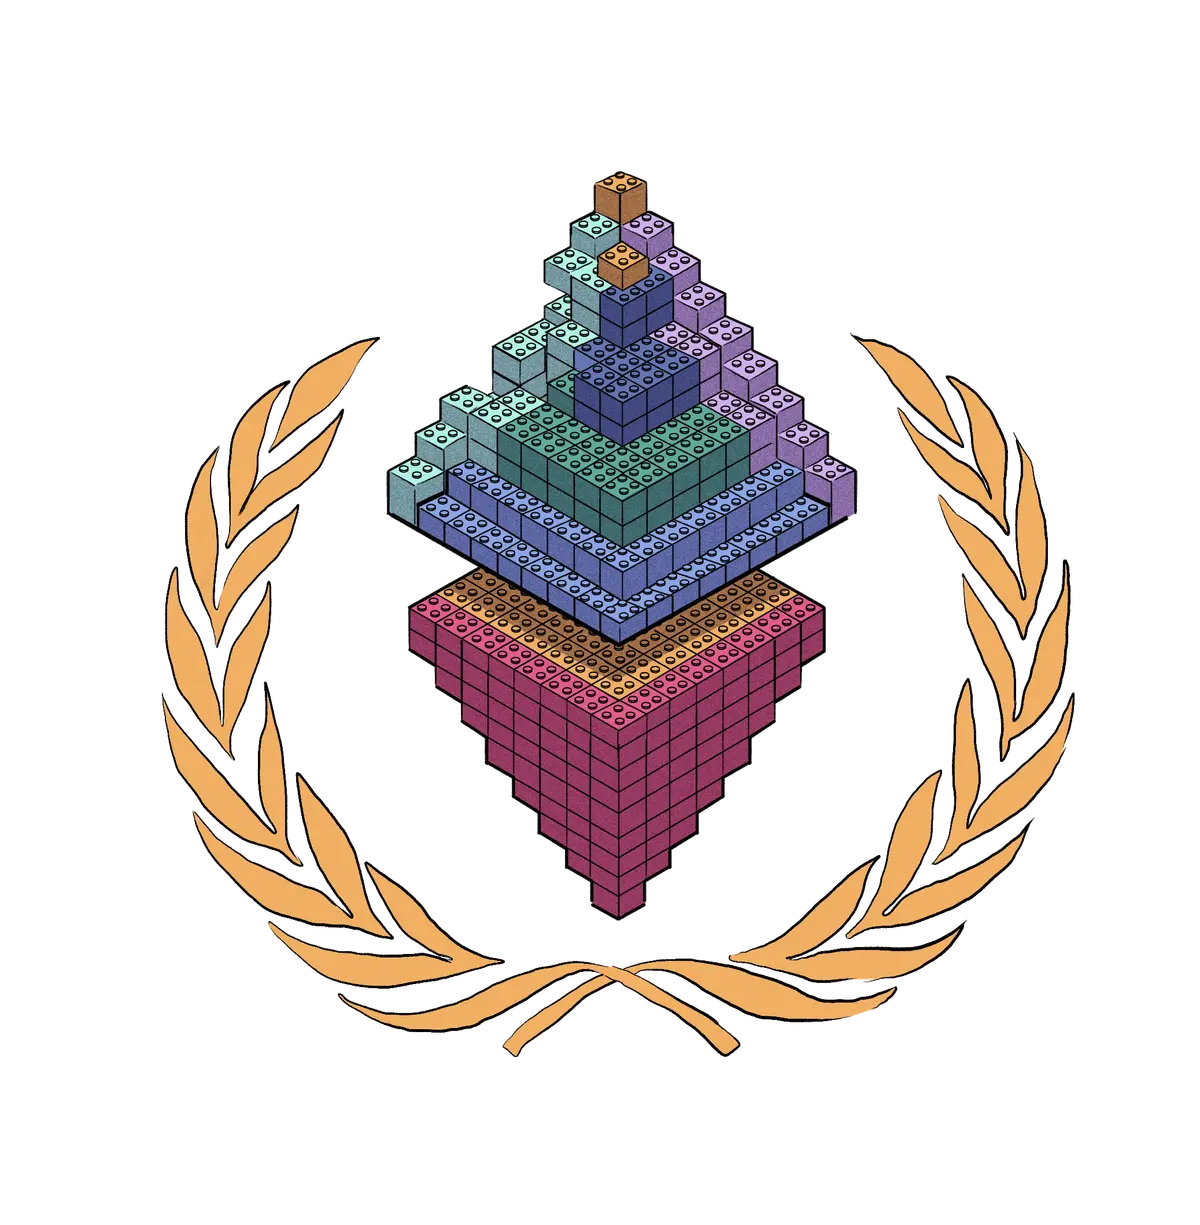 Logo de Ethereum hecho de ladrillos lego.